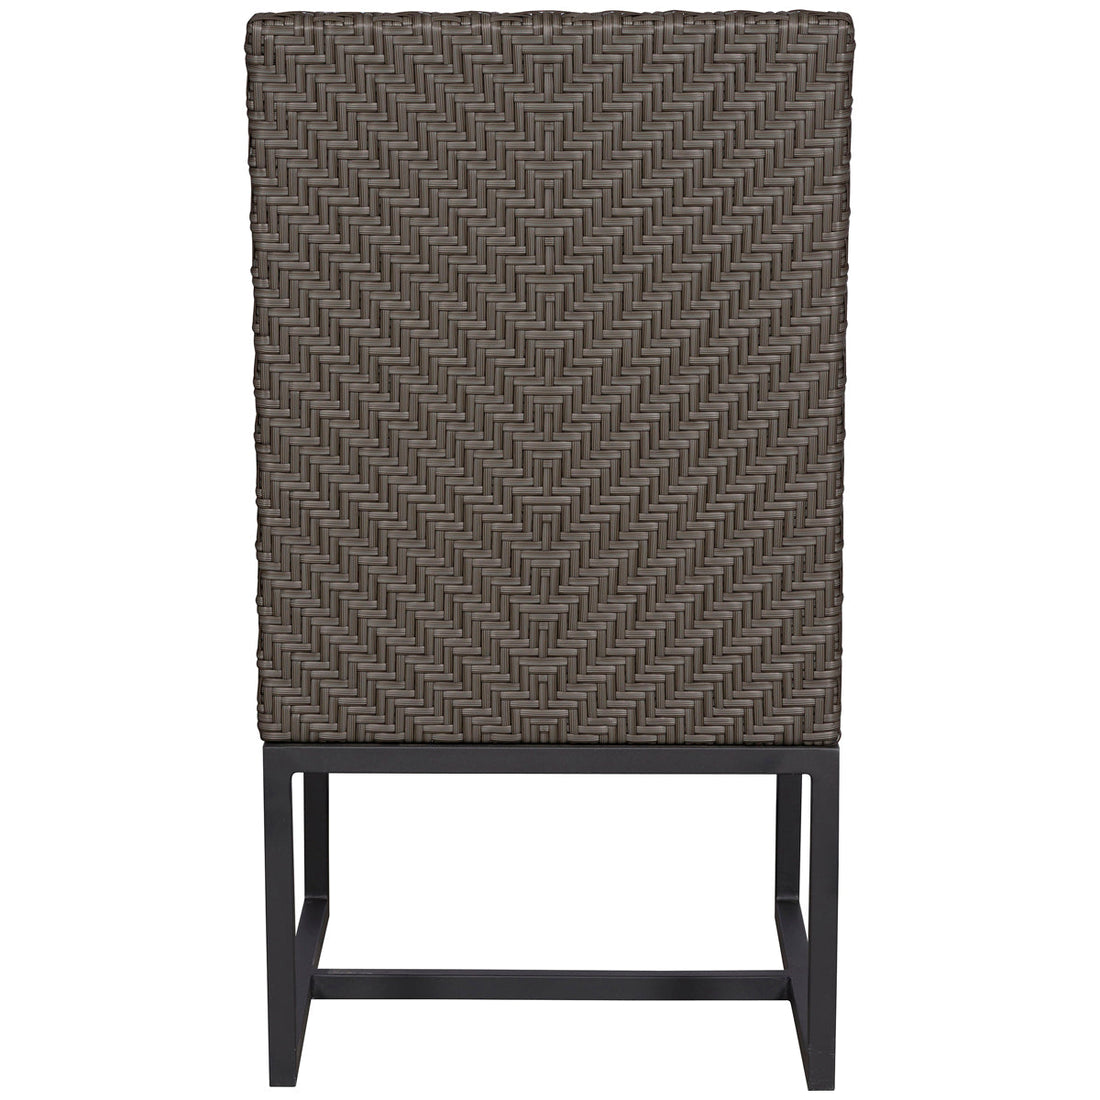 Vanguard Furniture Bridgehampton Outdoor Side Chair